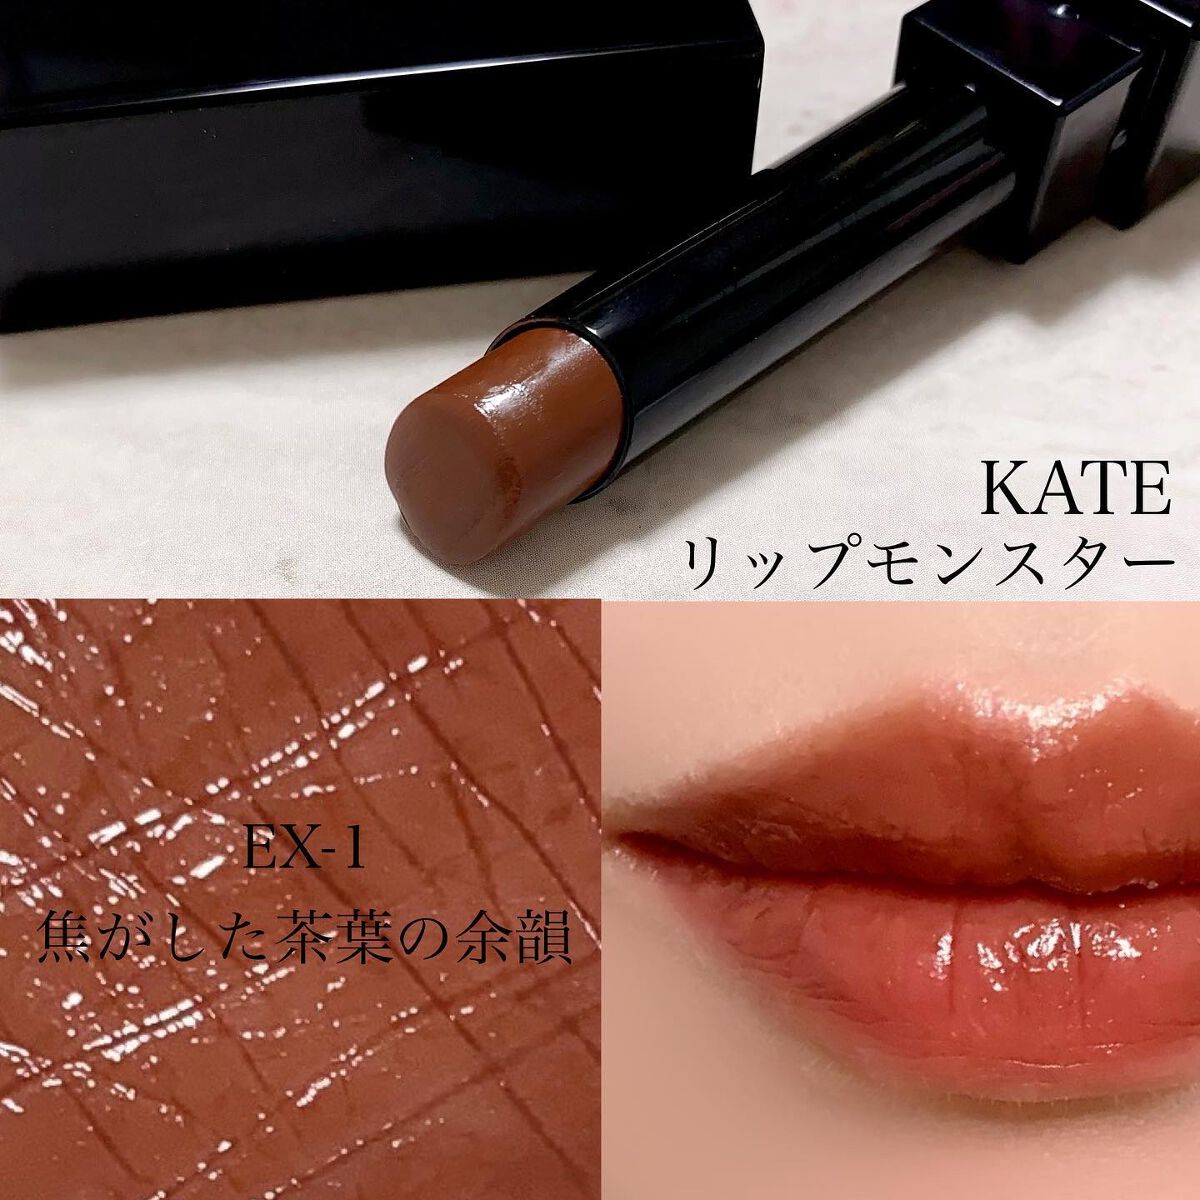 KATE リップモンスター EX－1 焦がした茶葉の余韻 - ベースメイク/化粧品